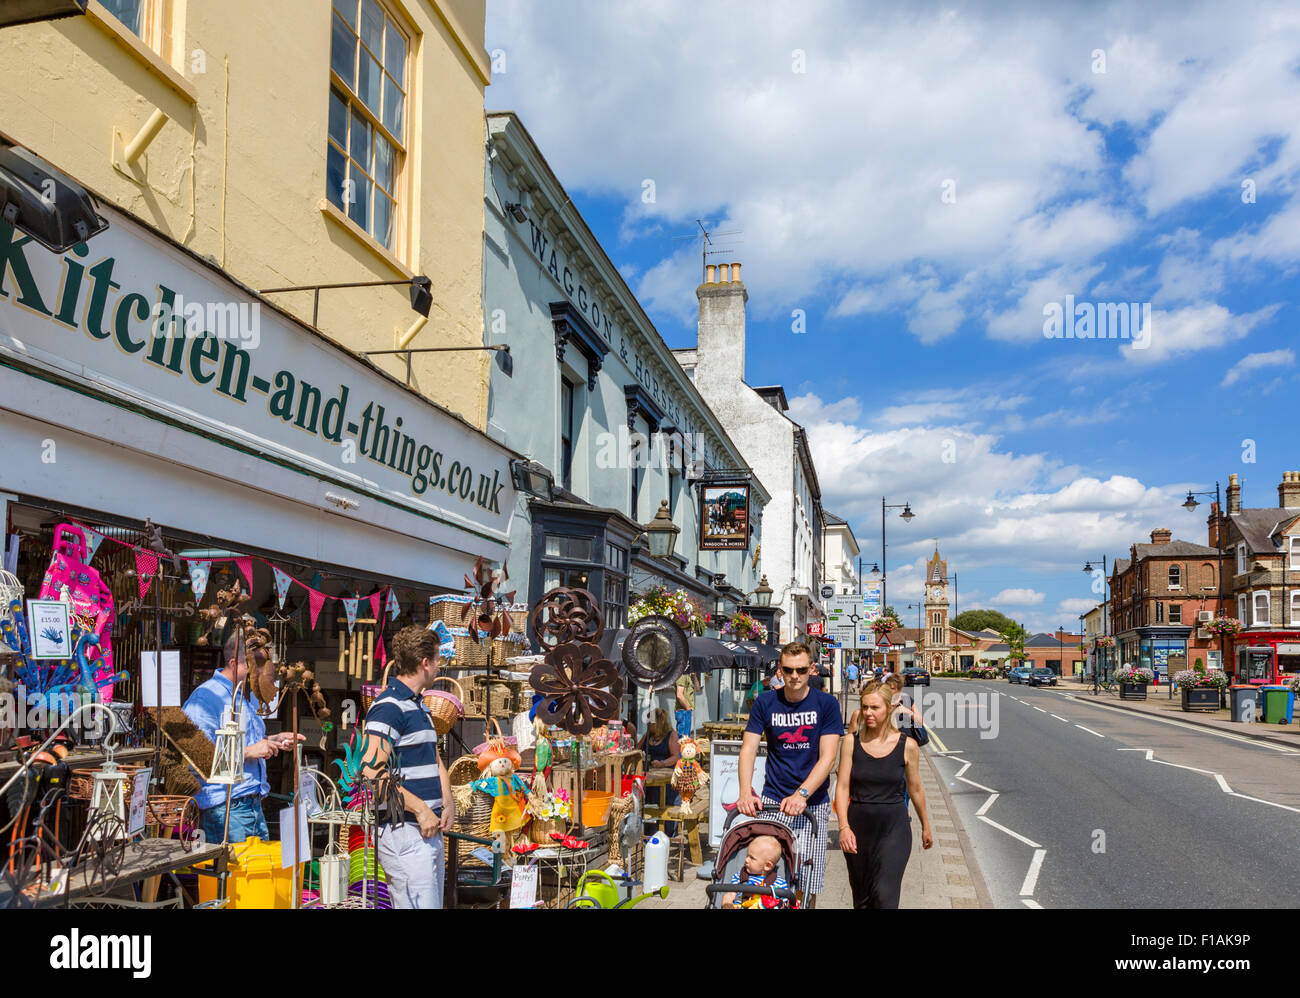 Geschäfte auf der High Street, Newmarket, Suffolk, England, UK Stockfoto